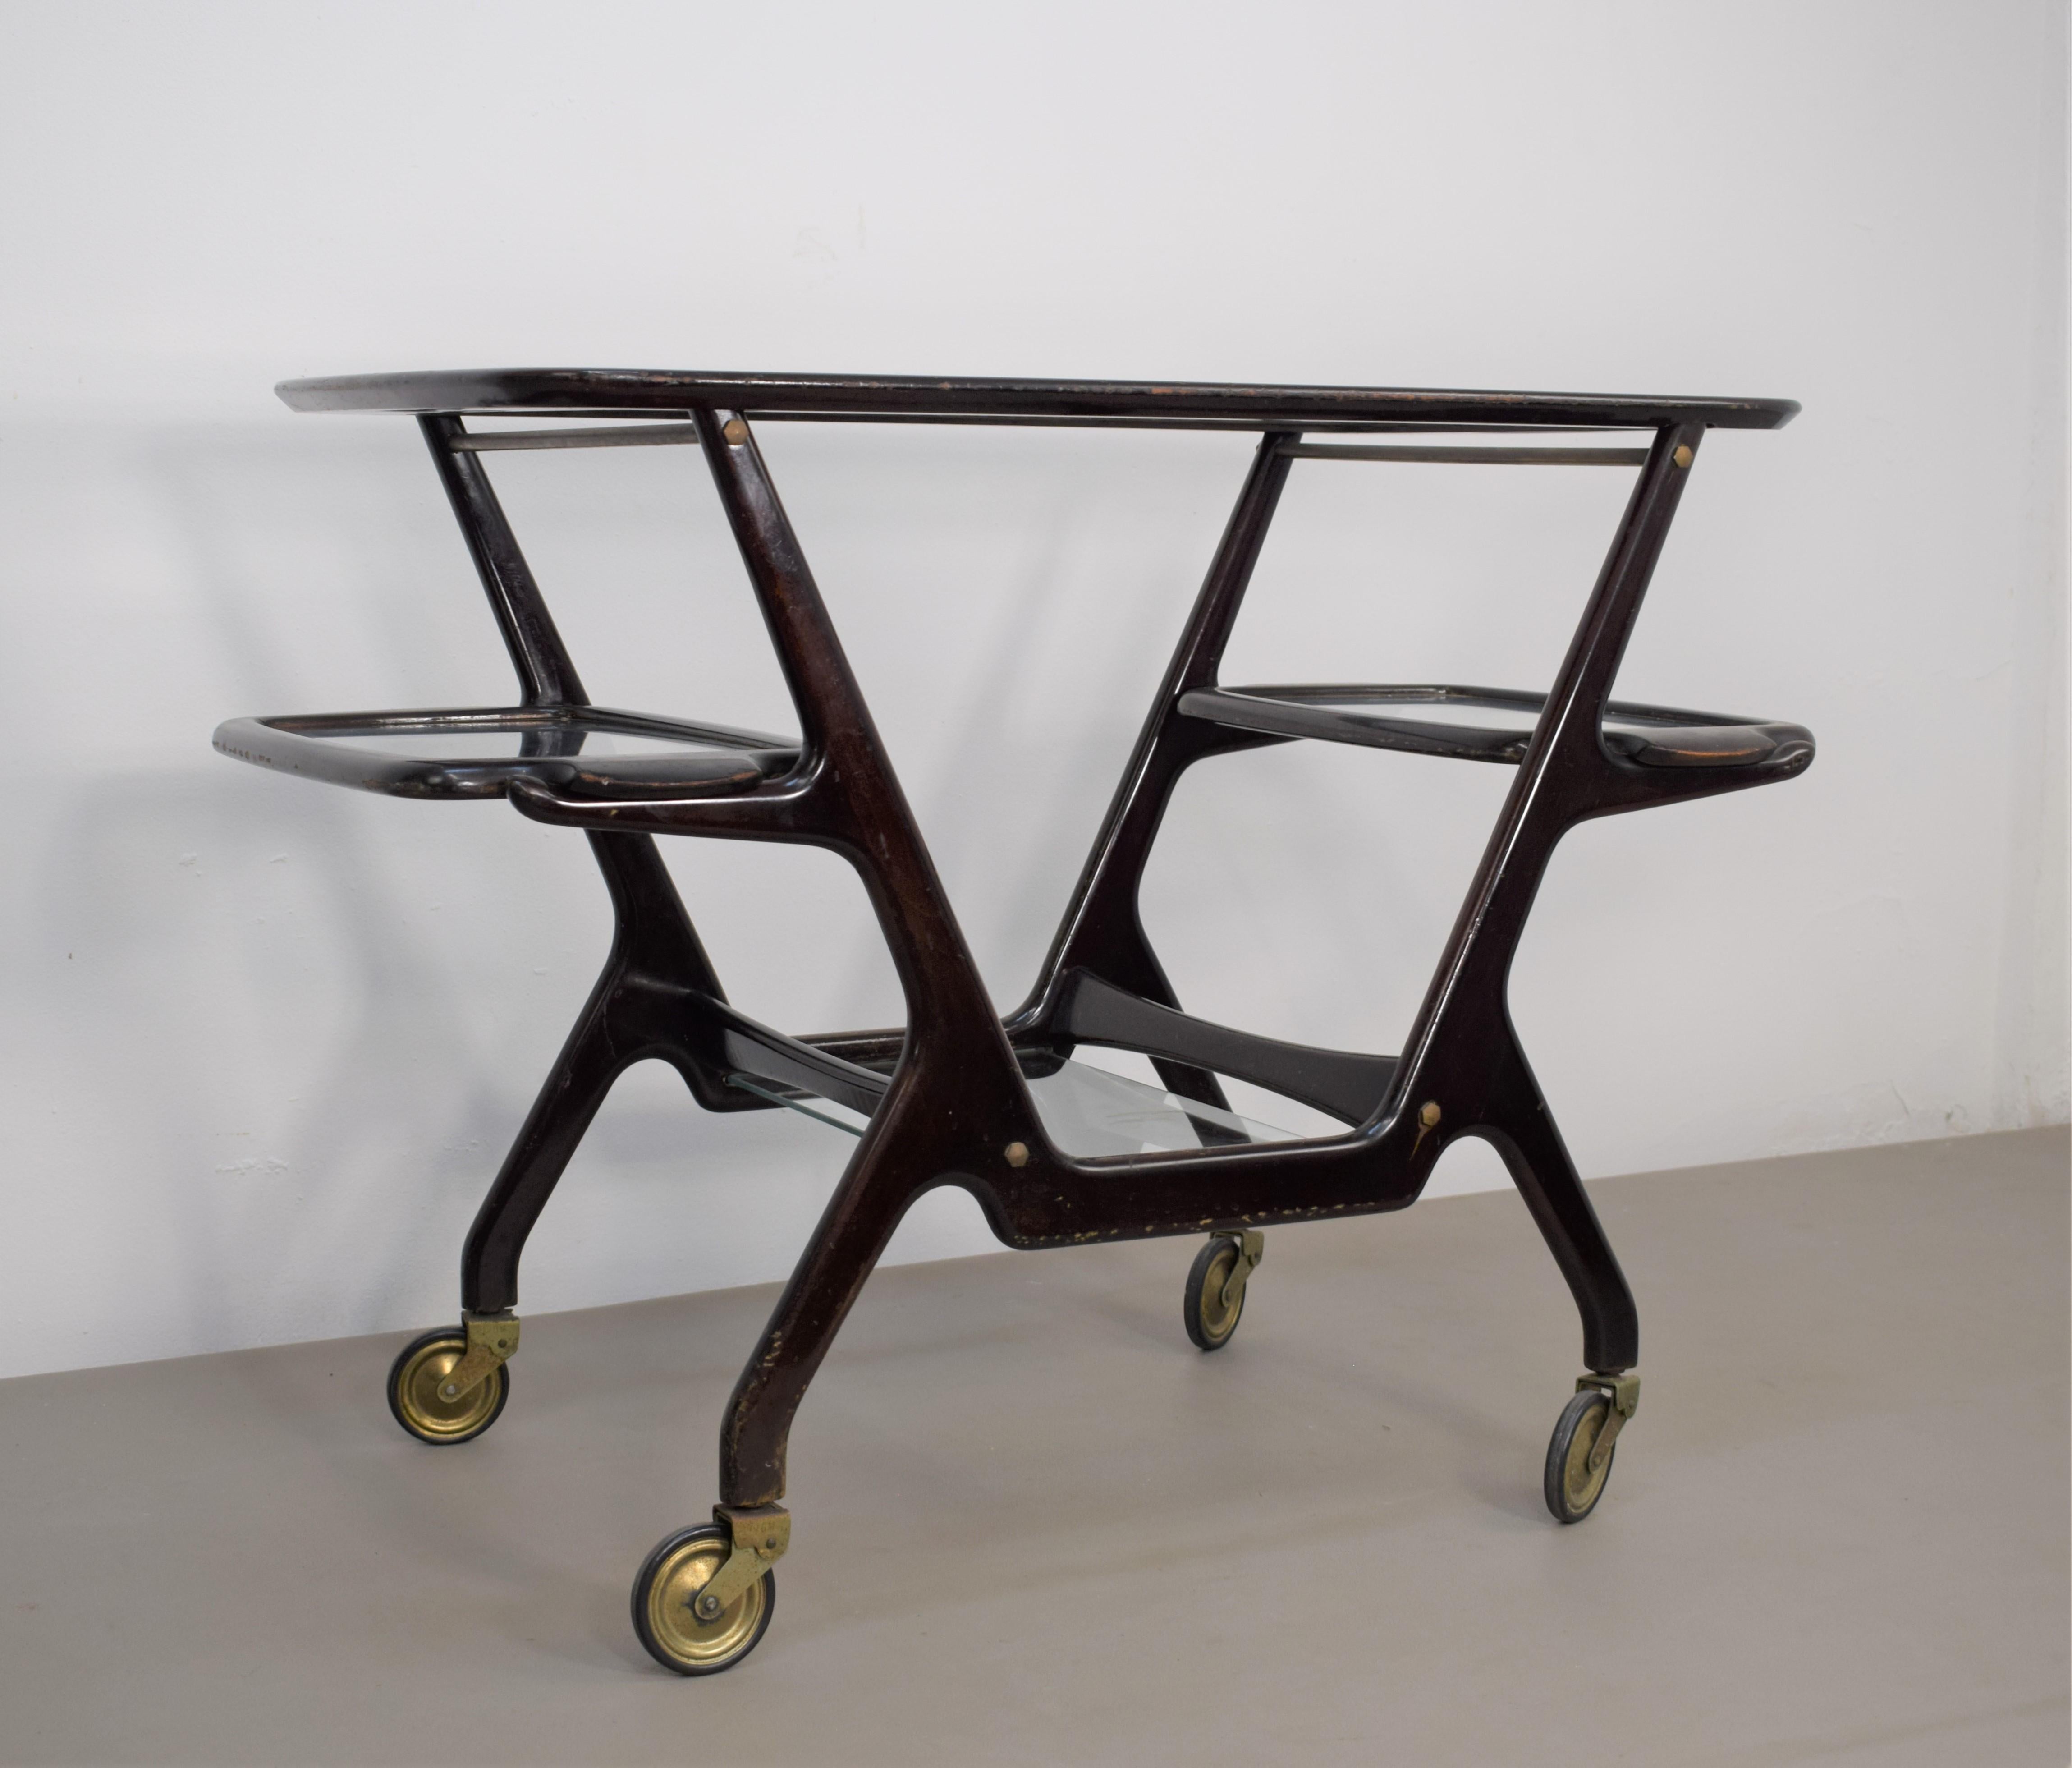 Italian bar cart by Cesare Lacca, 1950s.
Dimensions: H=68 cm; W= 93 cm; D= 48 cm.
